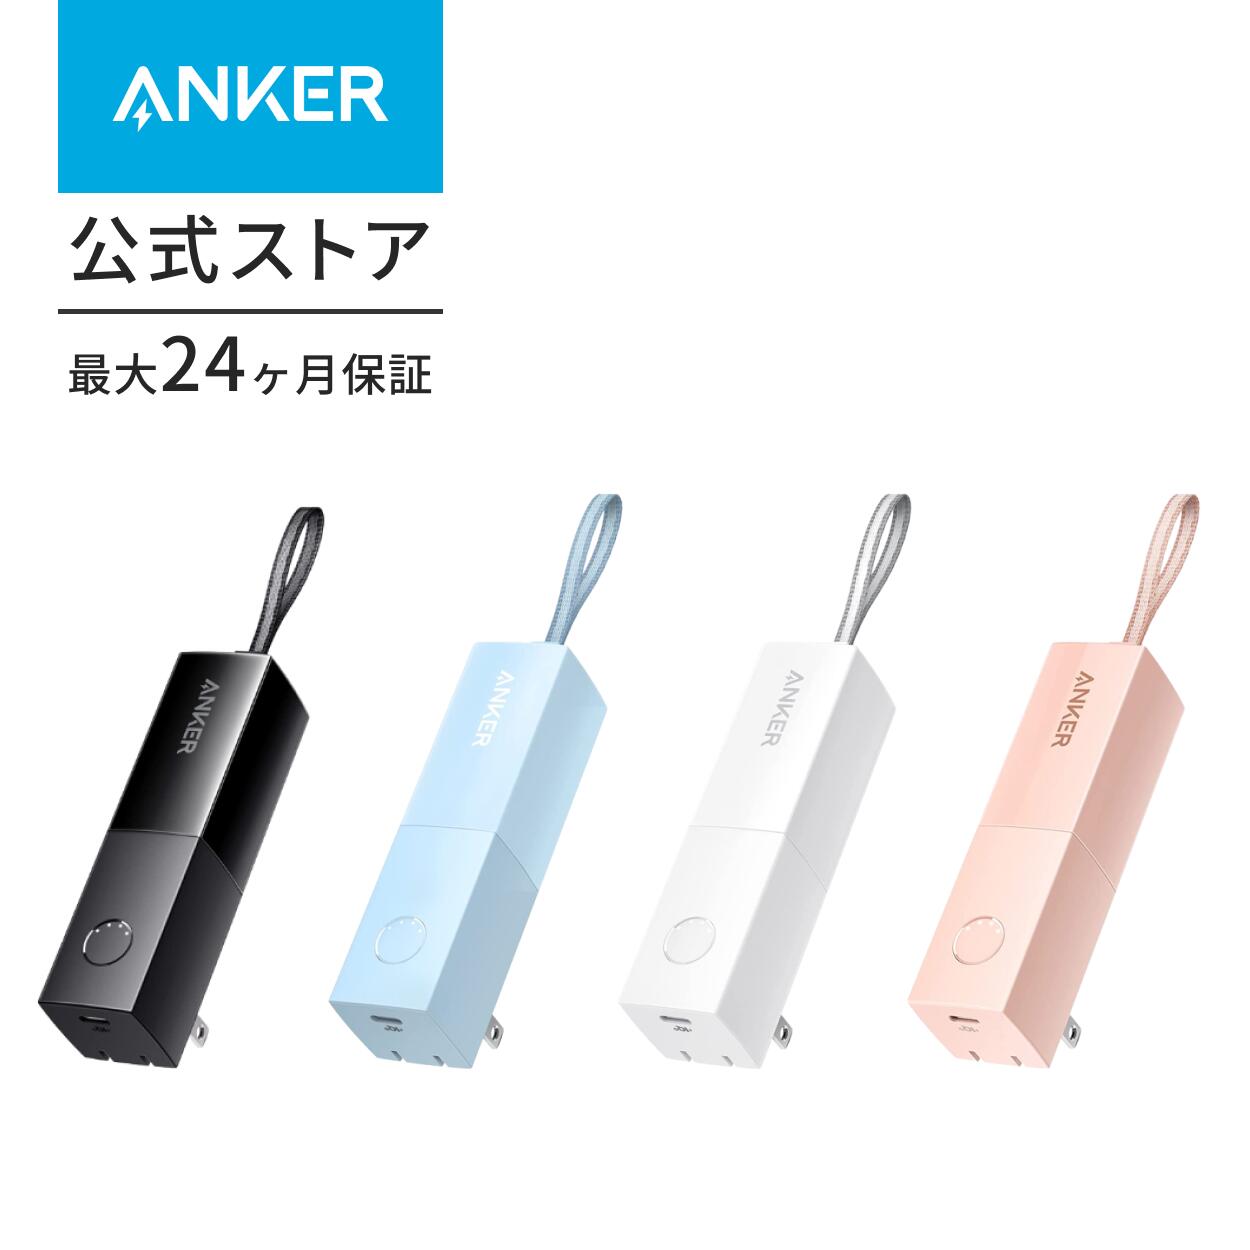 【6/1限定 最大10 OFFクーポン】【一部あす楽対応】Anker 511 Power Bank (PowerCore Fusion 5000) (5000mAhモバイルバッテリー搭載 USB充電器/USB PD対応) 【PSE技術基準適合/コンセント 一体型/PowerIQ 3.0(Gen2)搭載/折りたたみ式プラグ】 iPhone13 /13 Pro Android